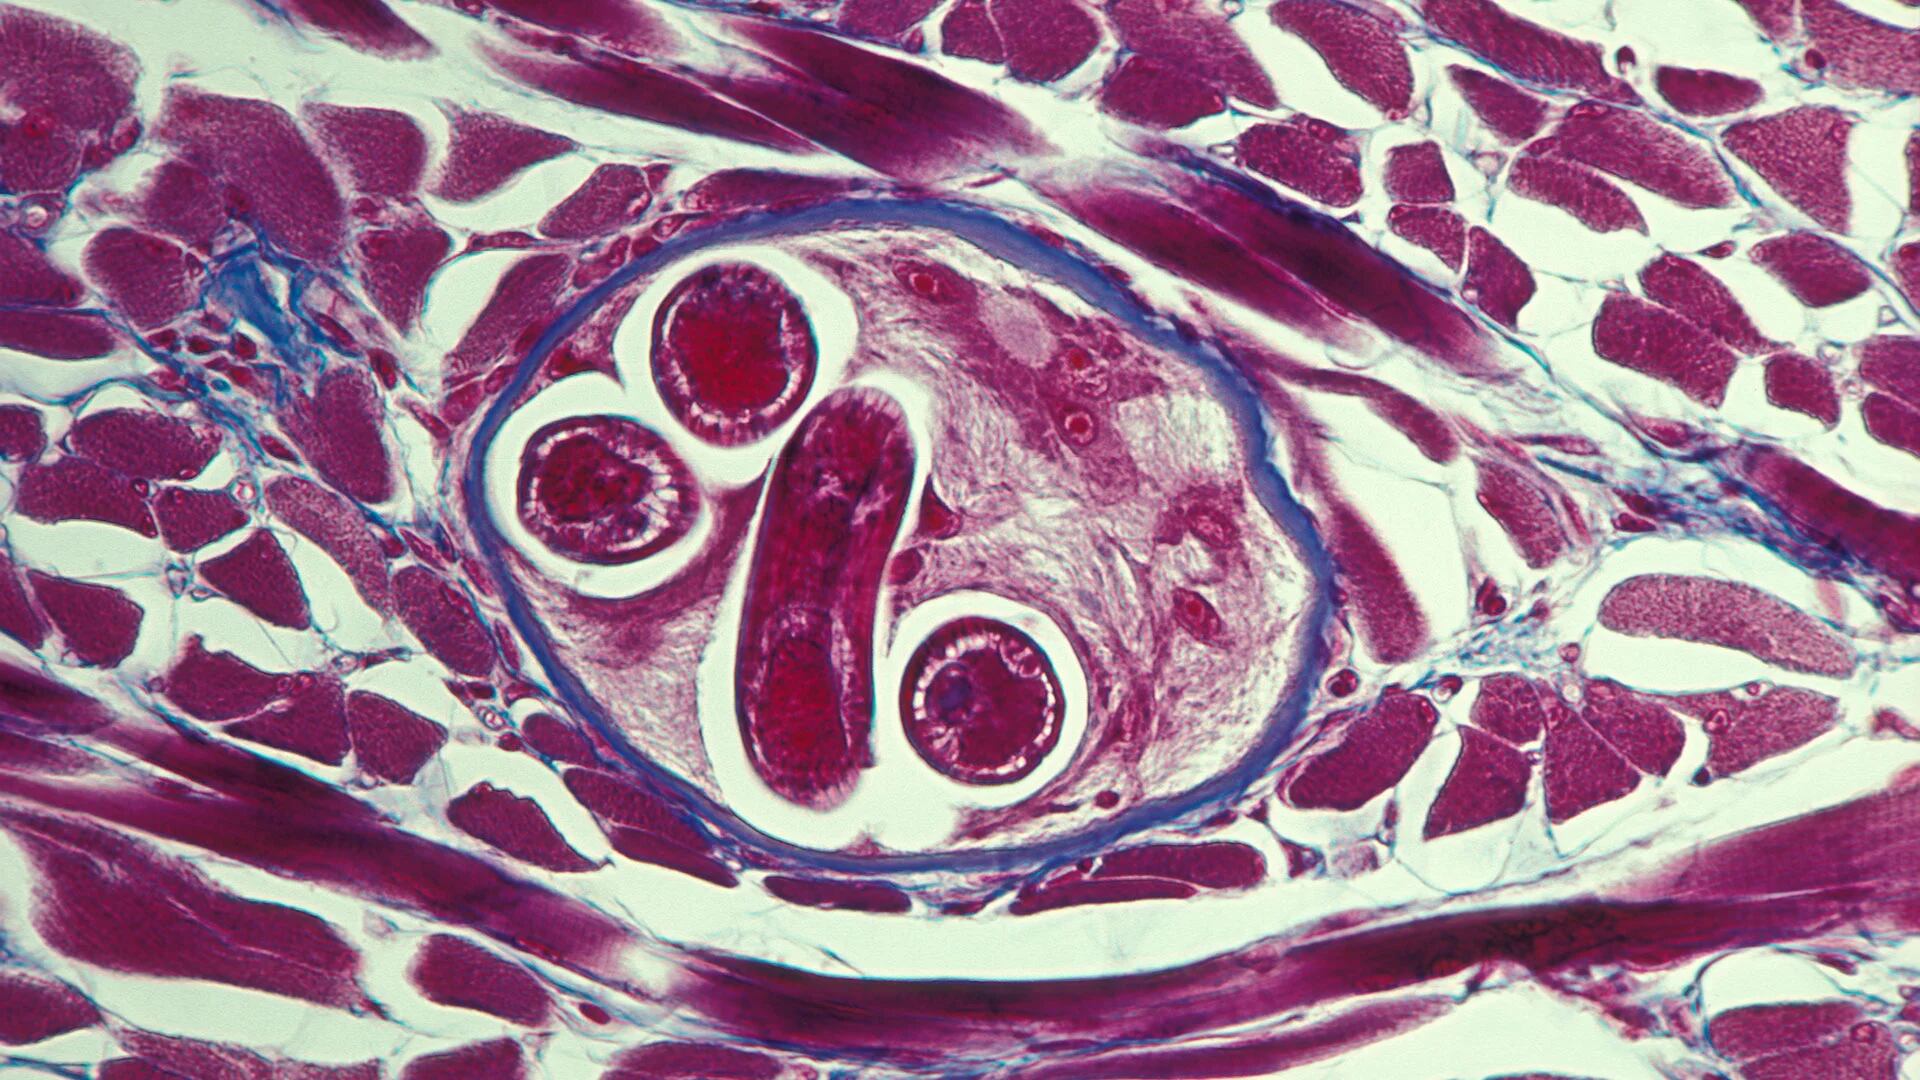 La triquinosis o trichinellosis es una enfermedad parasitaria que se transmite al consumir carne infectada con larvas del parásito del género Trichinella spp.  (Getty)